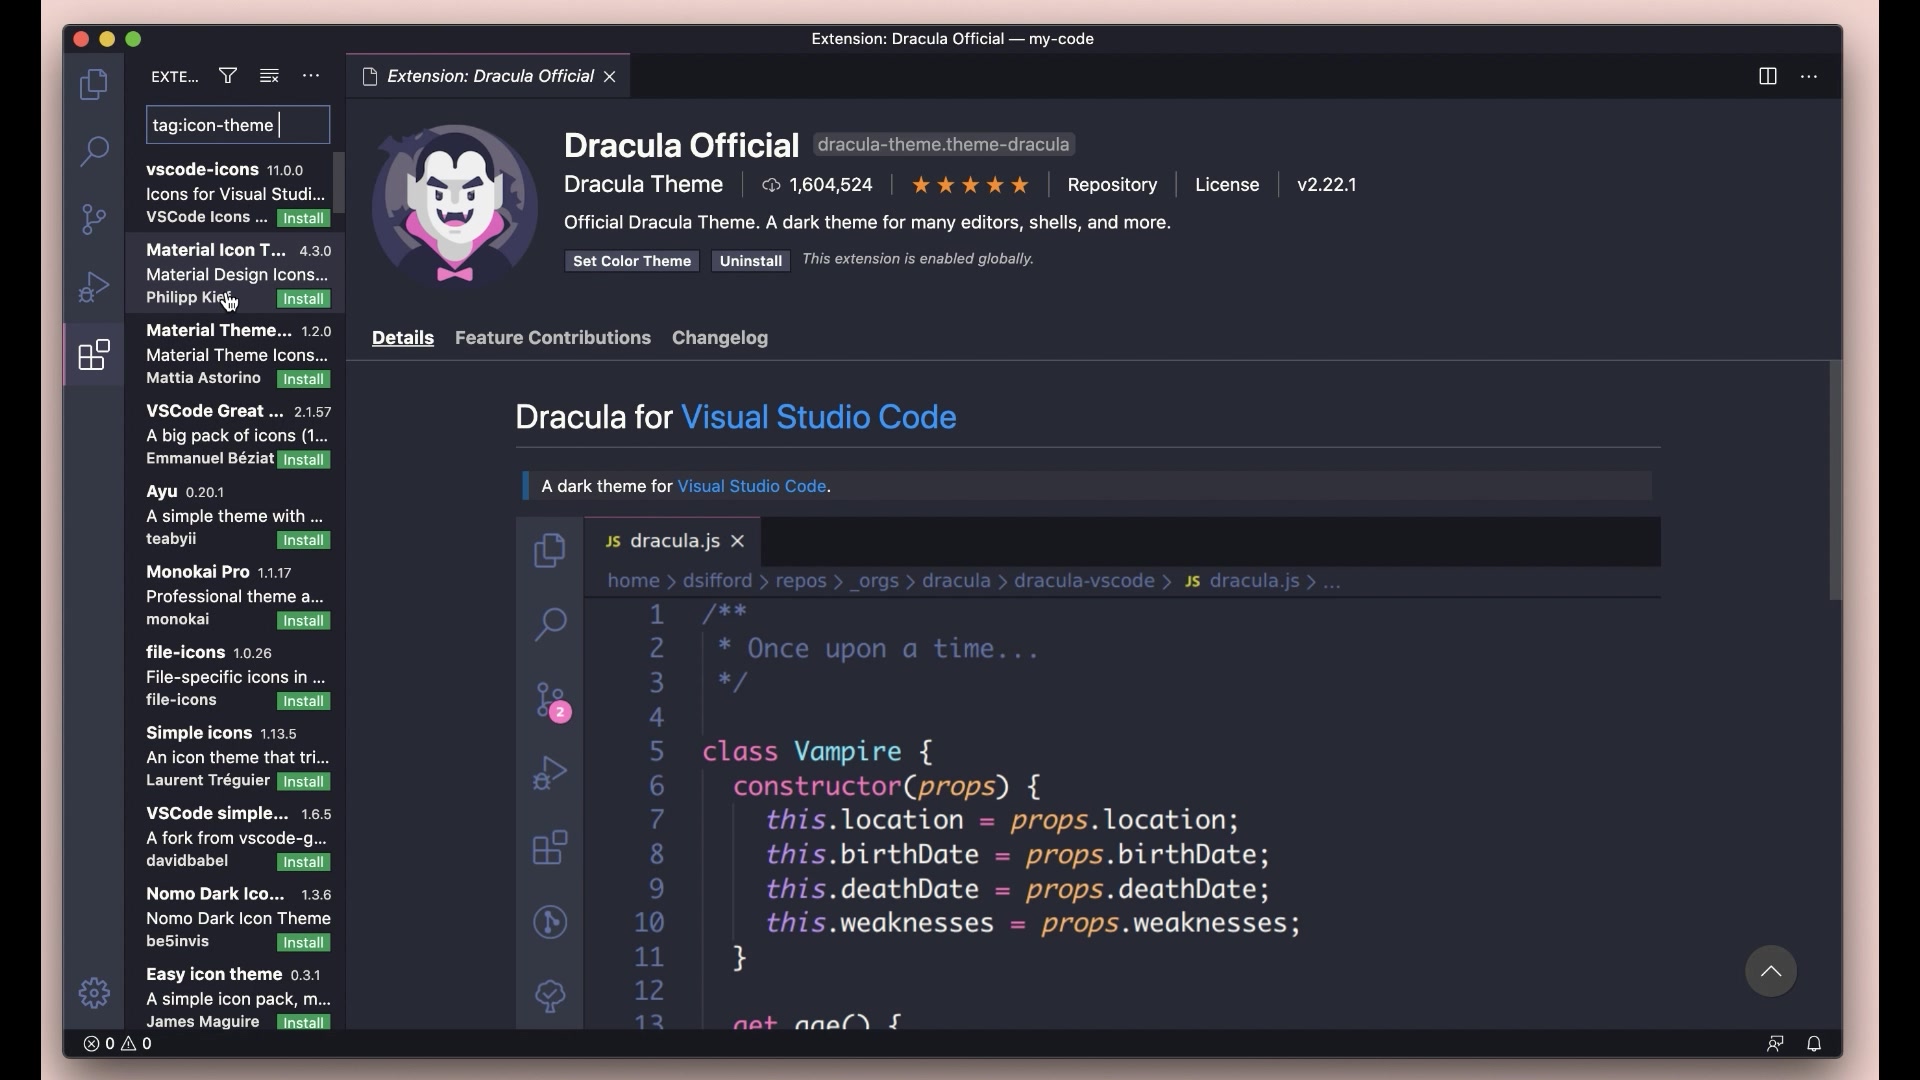 Personalize Visual Studio Code: Visual Studio Code rất linh hoạt và cho phép cá nhân hóa theo sở thích của từng người dùng bằng cách tùy chỉnh giao diện, màu sắc, phông chữ, định dạng file và nhiều hơn thế nữa. Hãy trải nghiệm và thể hiện cá tính của bạn với Visual Studio Code.